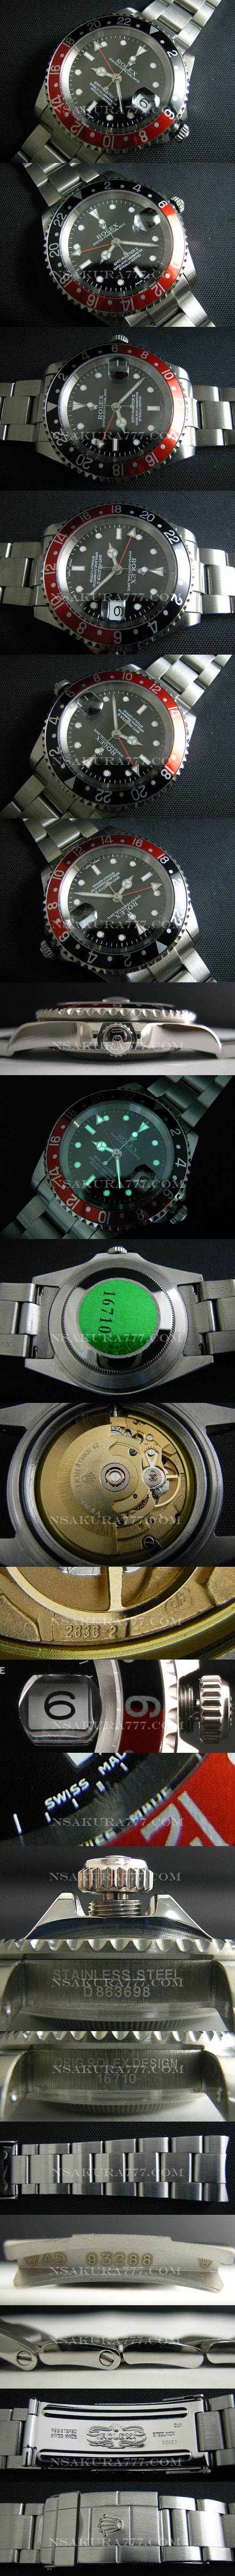 レプリカ時計ロレックス GMT マスター廉価版2836-2ムーブ搭載 GMT針単独調整可能 - ウインドウを閉じる